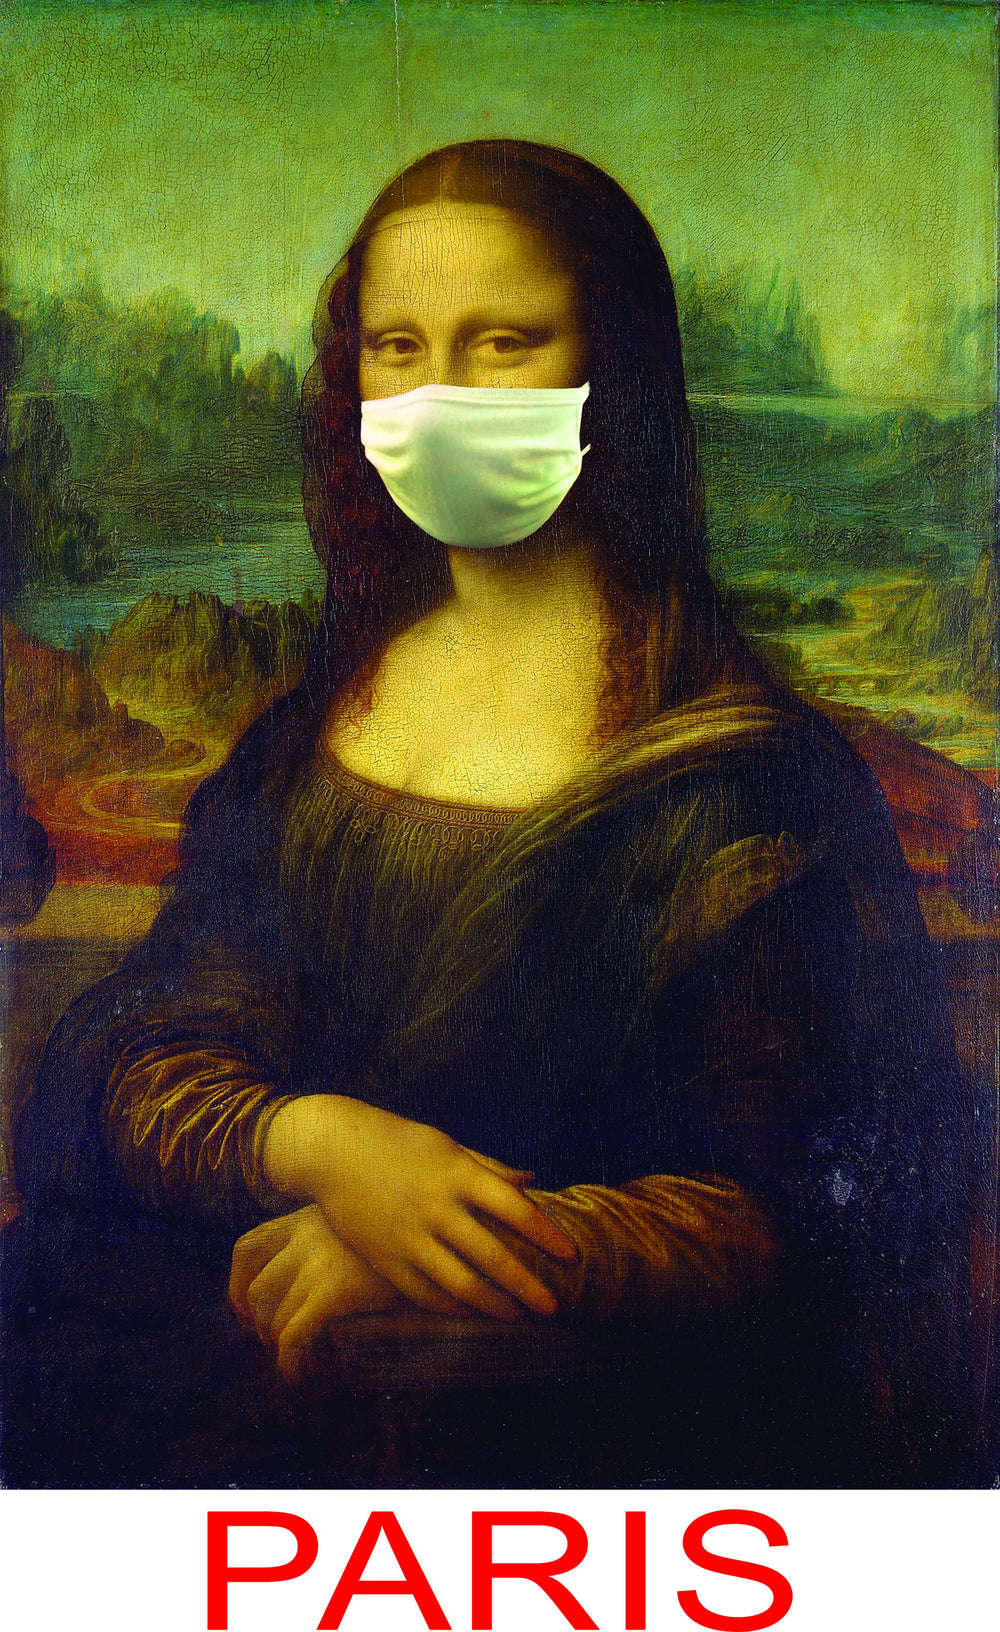 Tee shirt Mona Lisa la Joconde avec masque